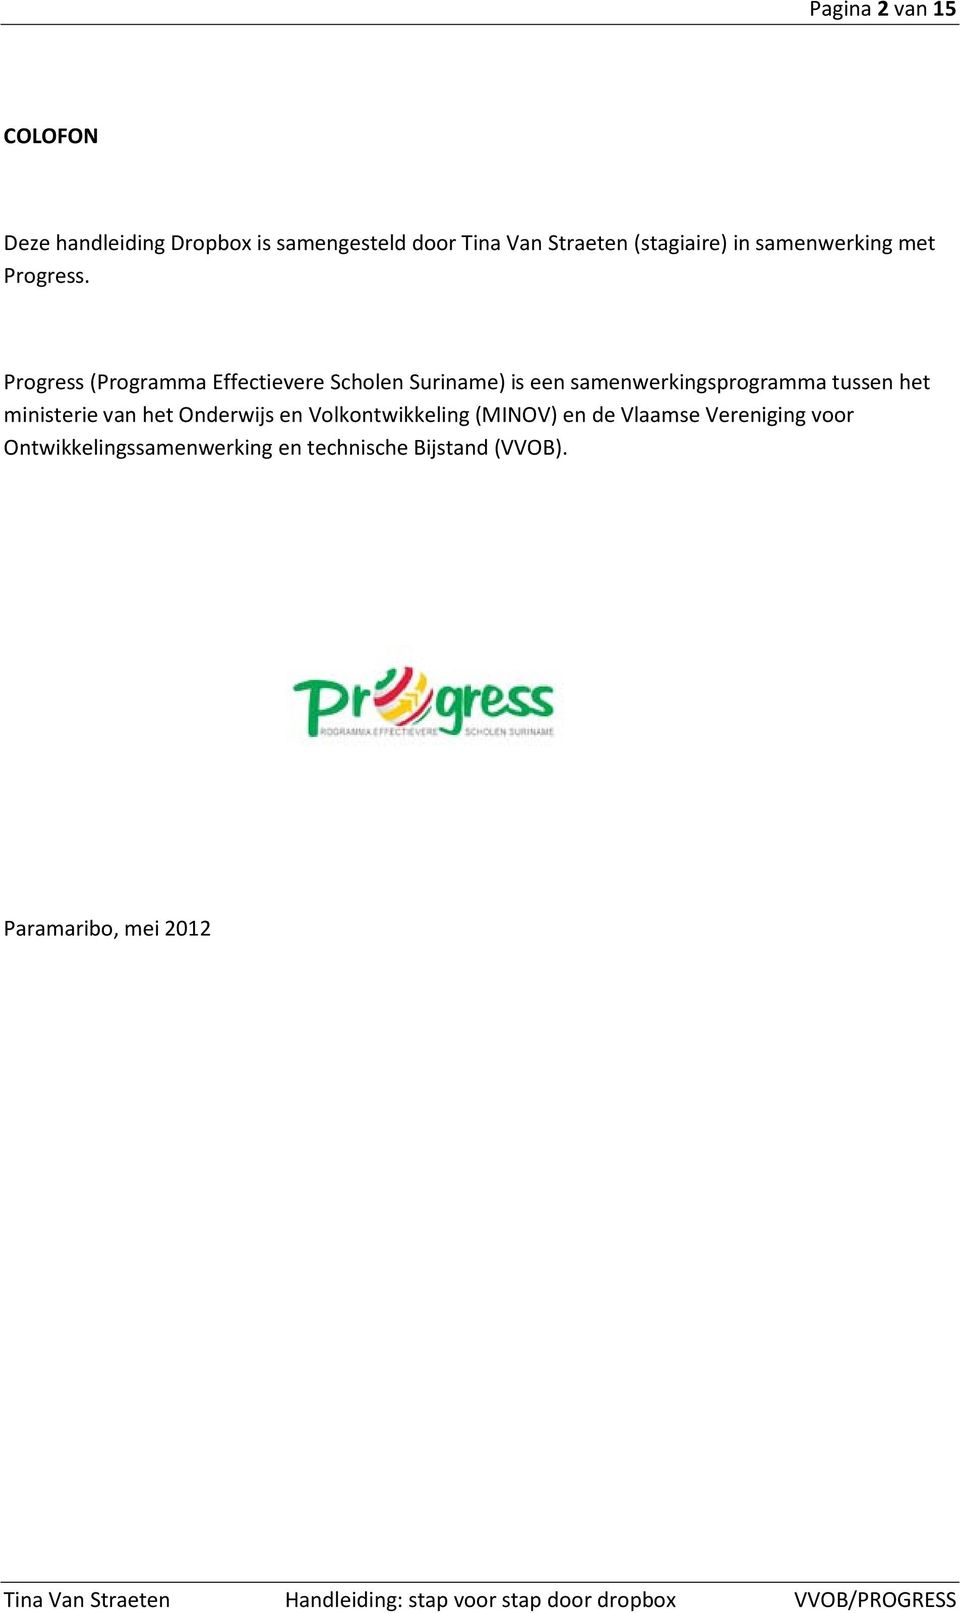 Progress (Programma Effectievere Scholen Suriname) is een samenwerkingsprogramma tussen het